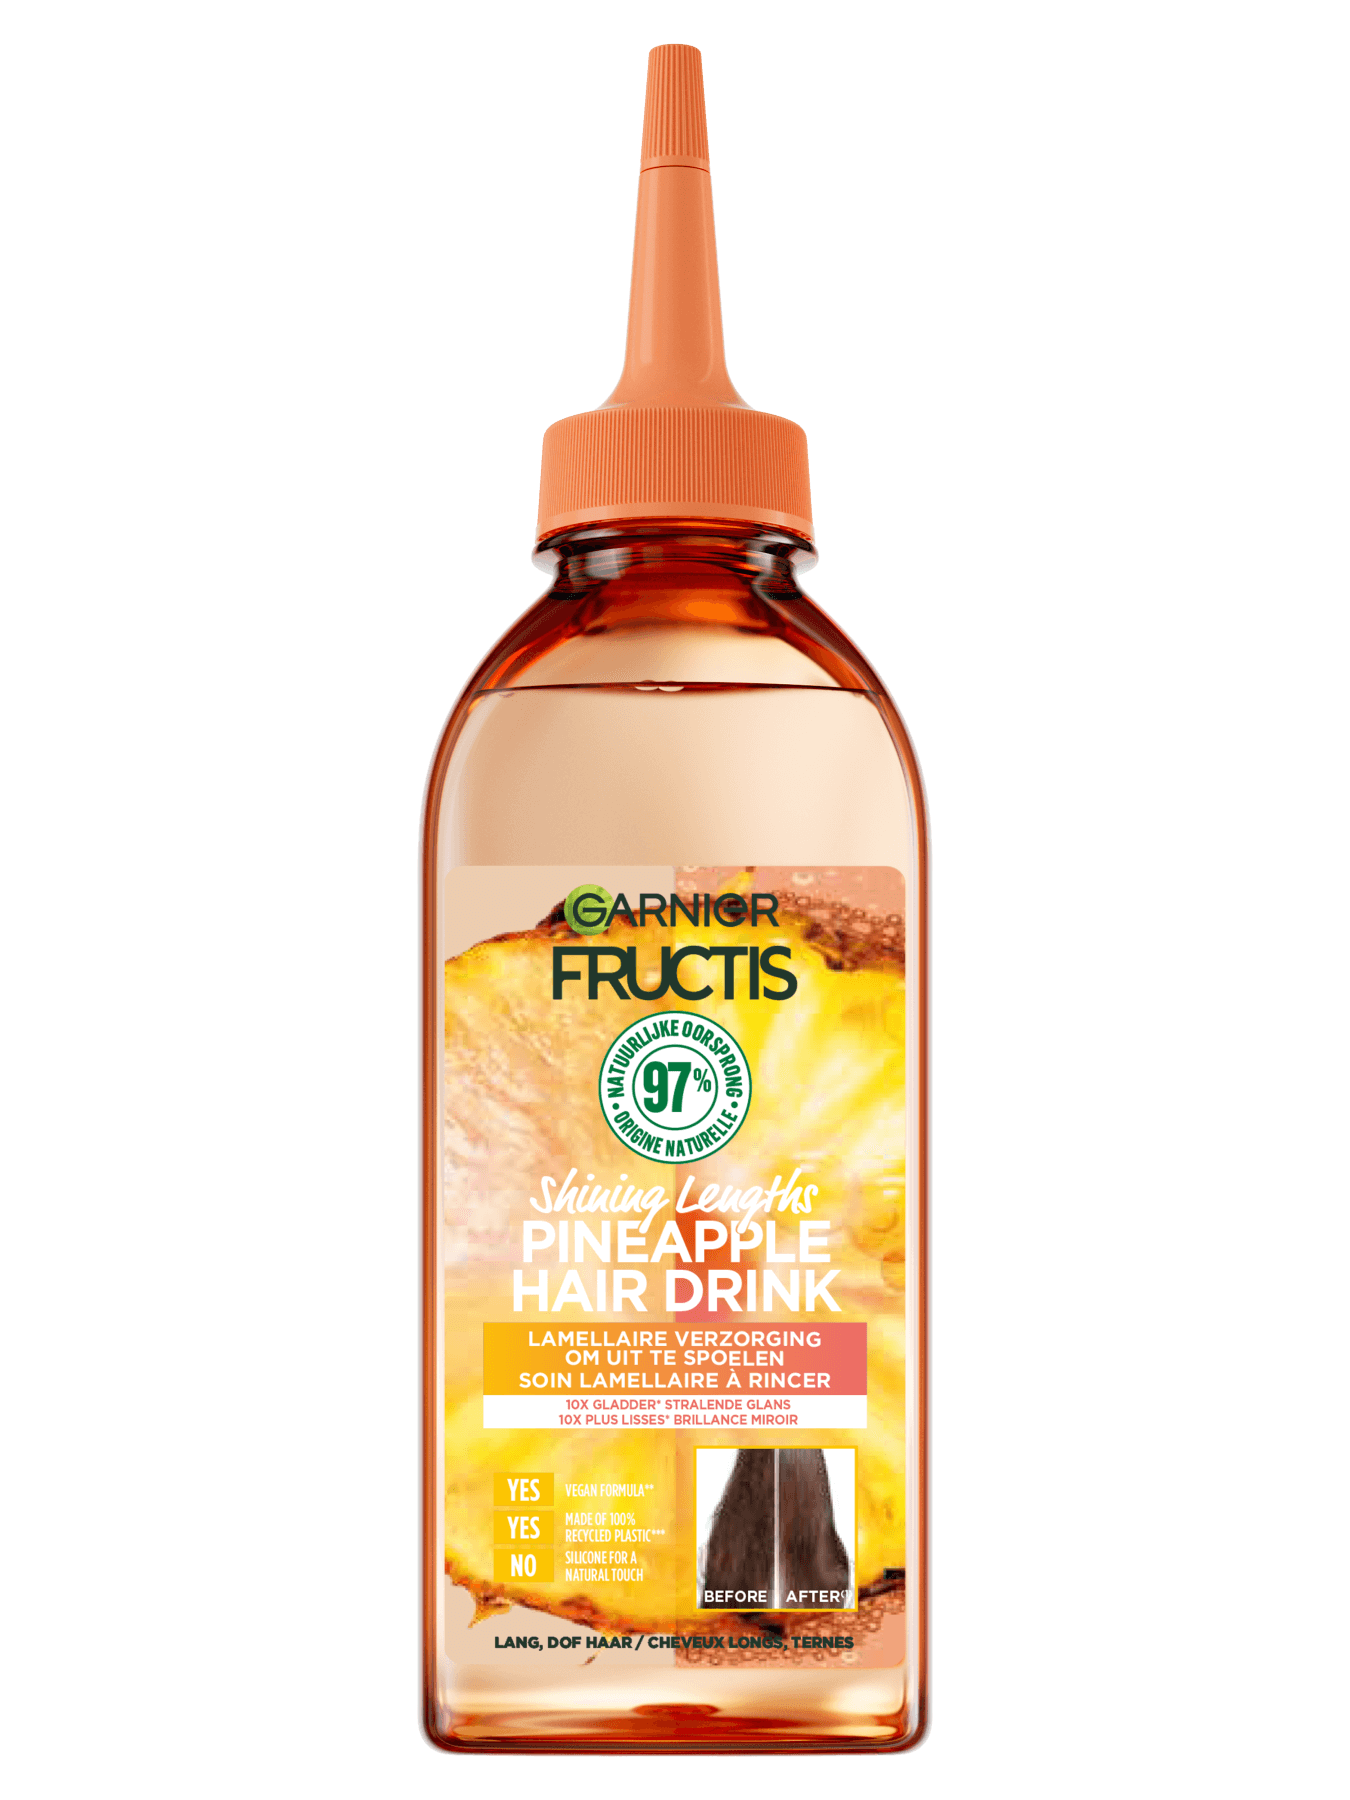 GAR Haircare Fructis Hair Drink Pineapple 200ml pack front 23jpg